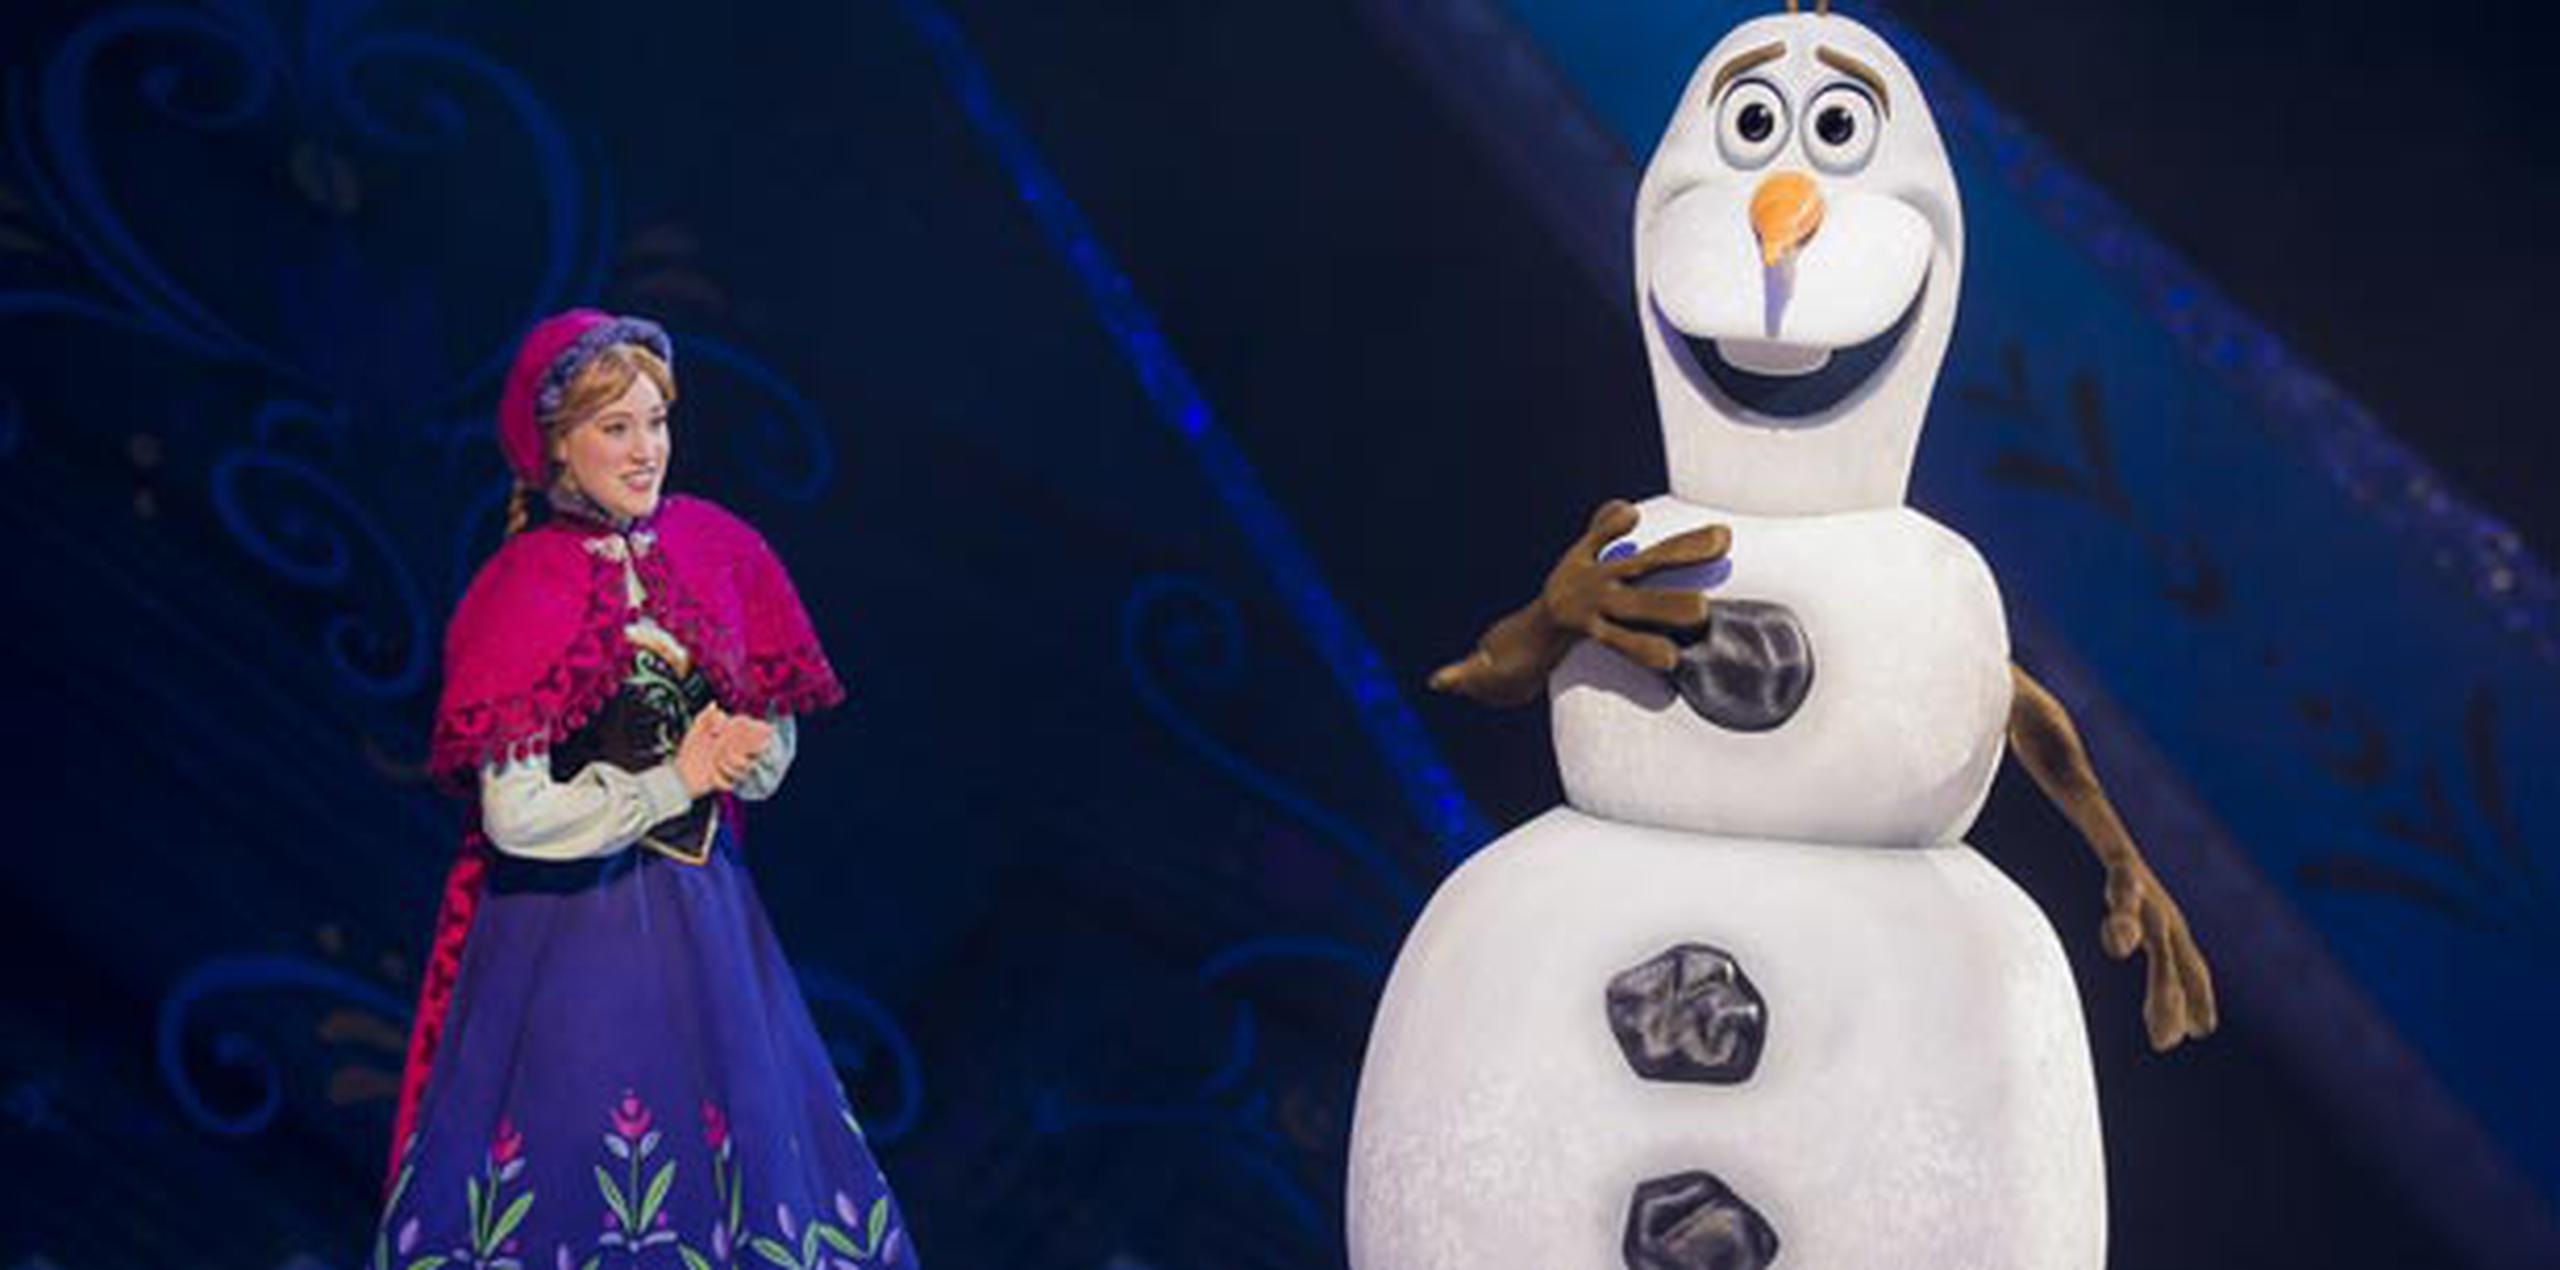 El público entrará al fantástico mundo invernal de Arendelle con las hermanas Anna y Elsa de la película animada número uno de todos los tiempos, Frozen. (Suministrada)